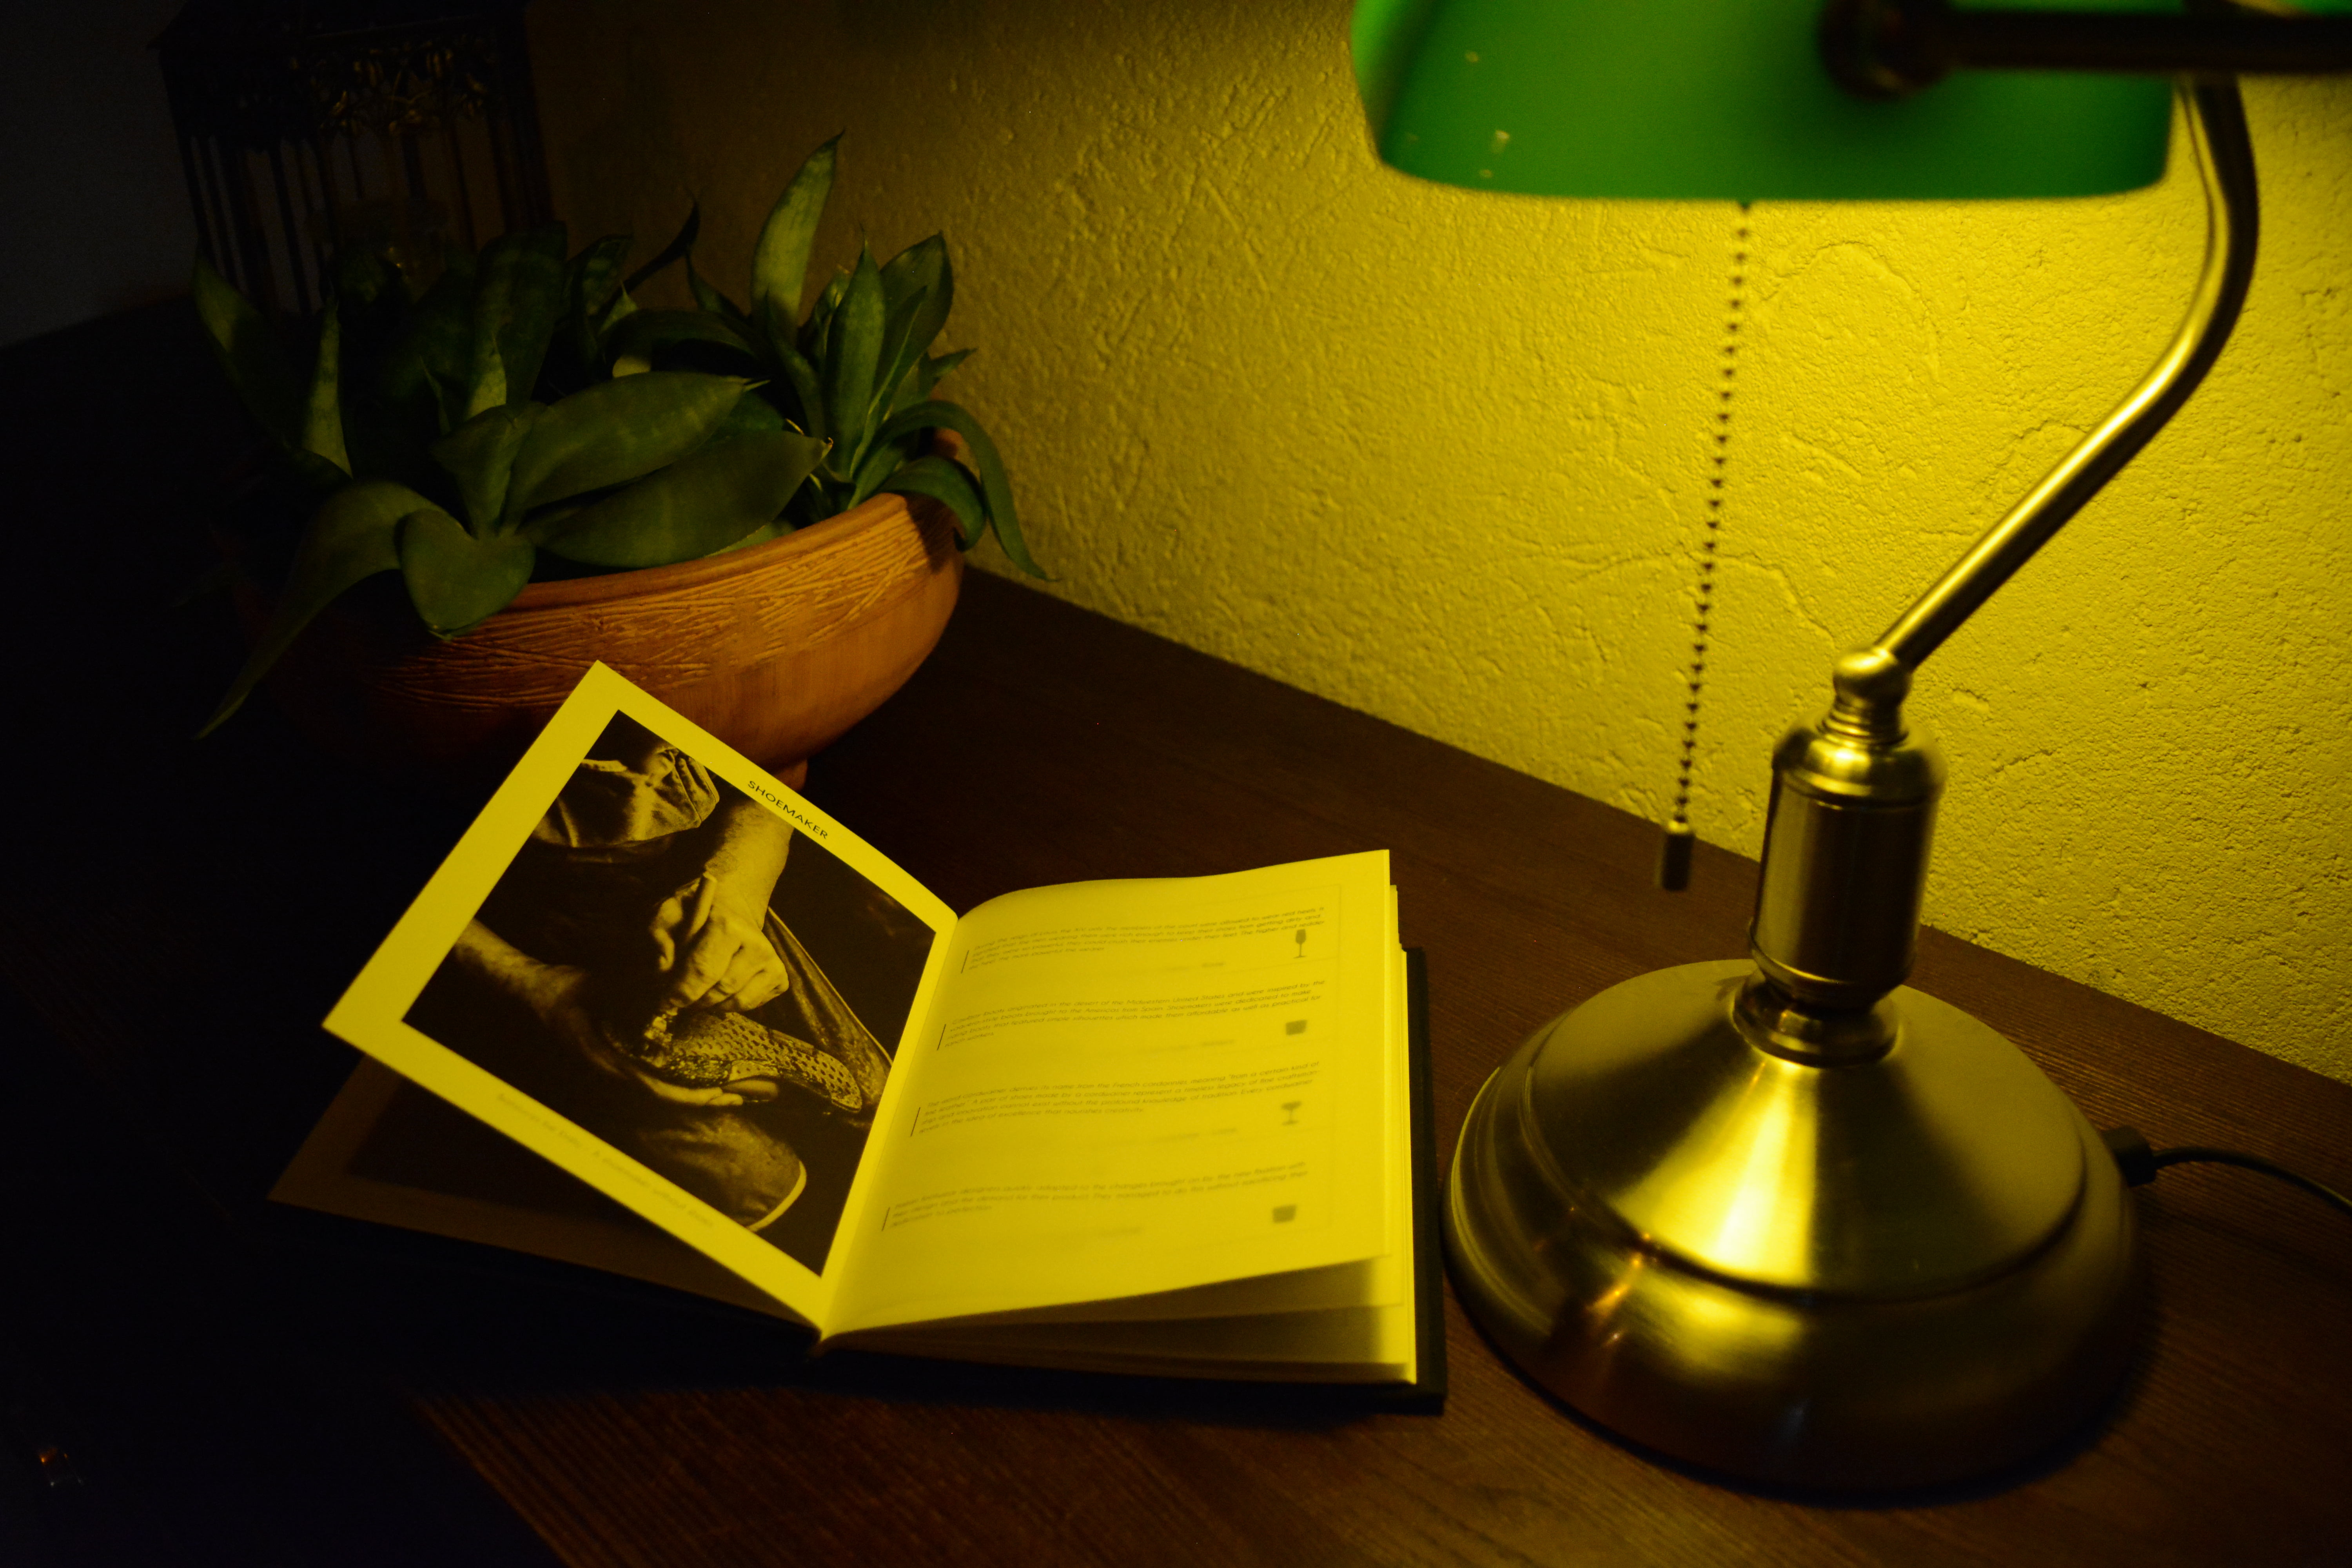 Apoteka's menu, displayed next to a cozy light.